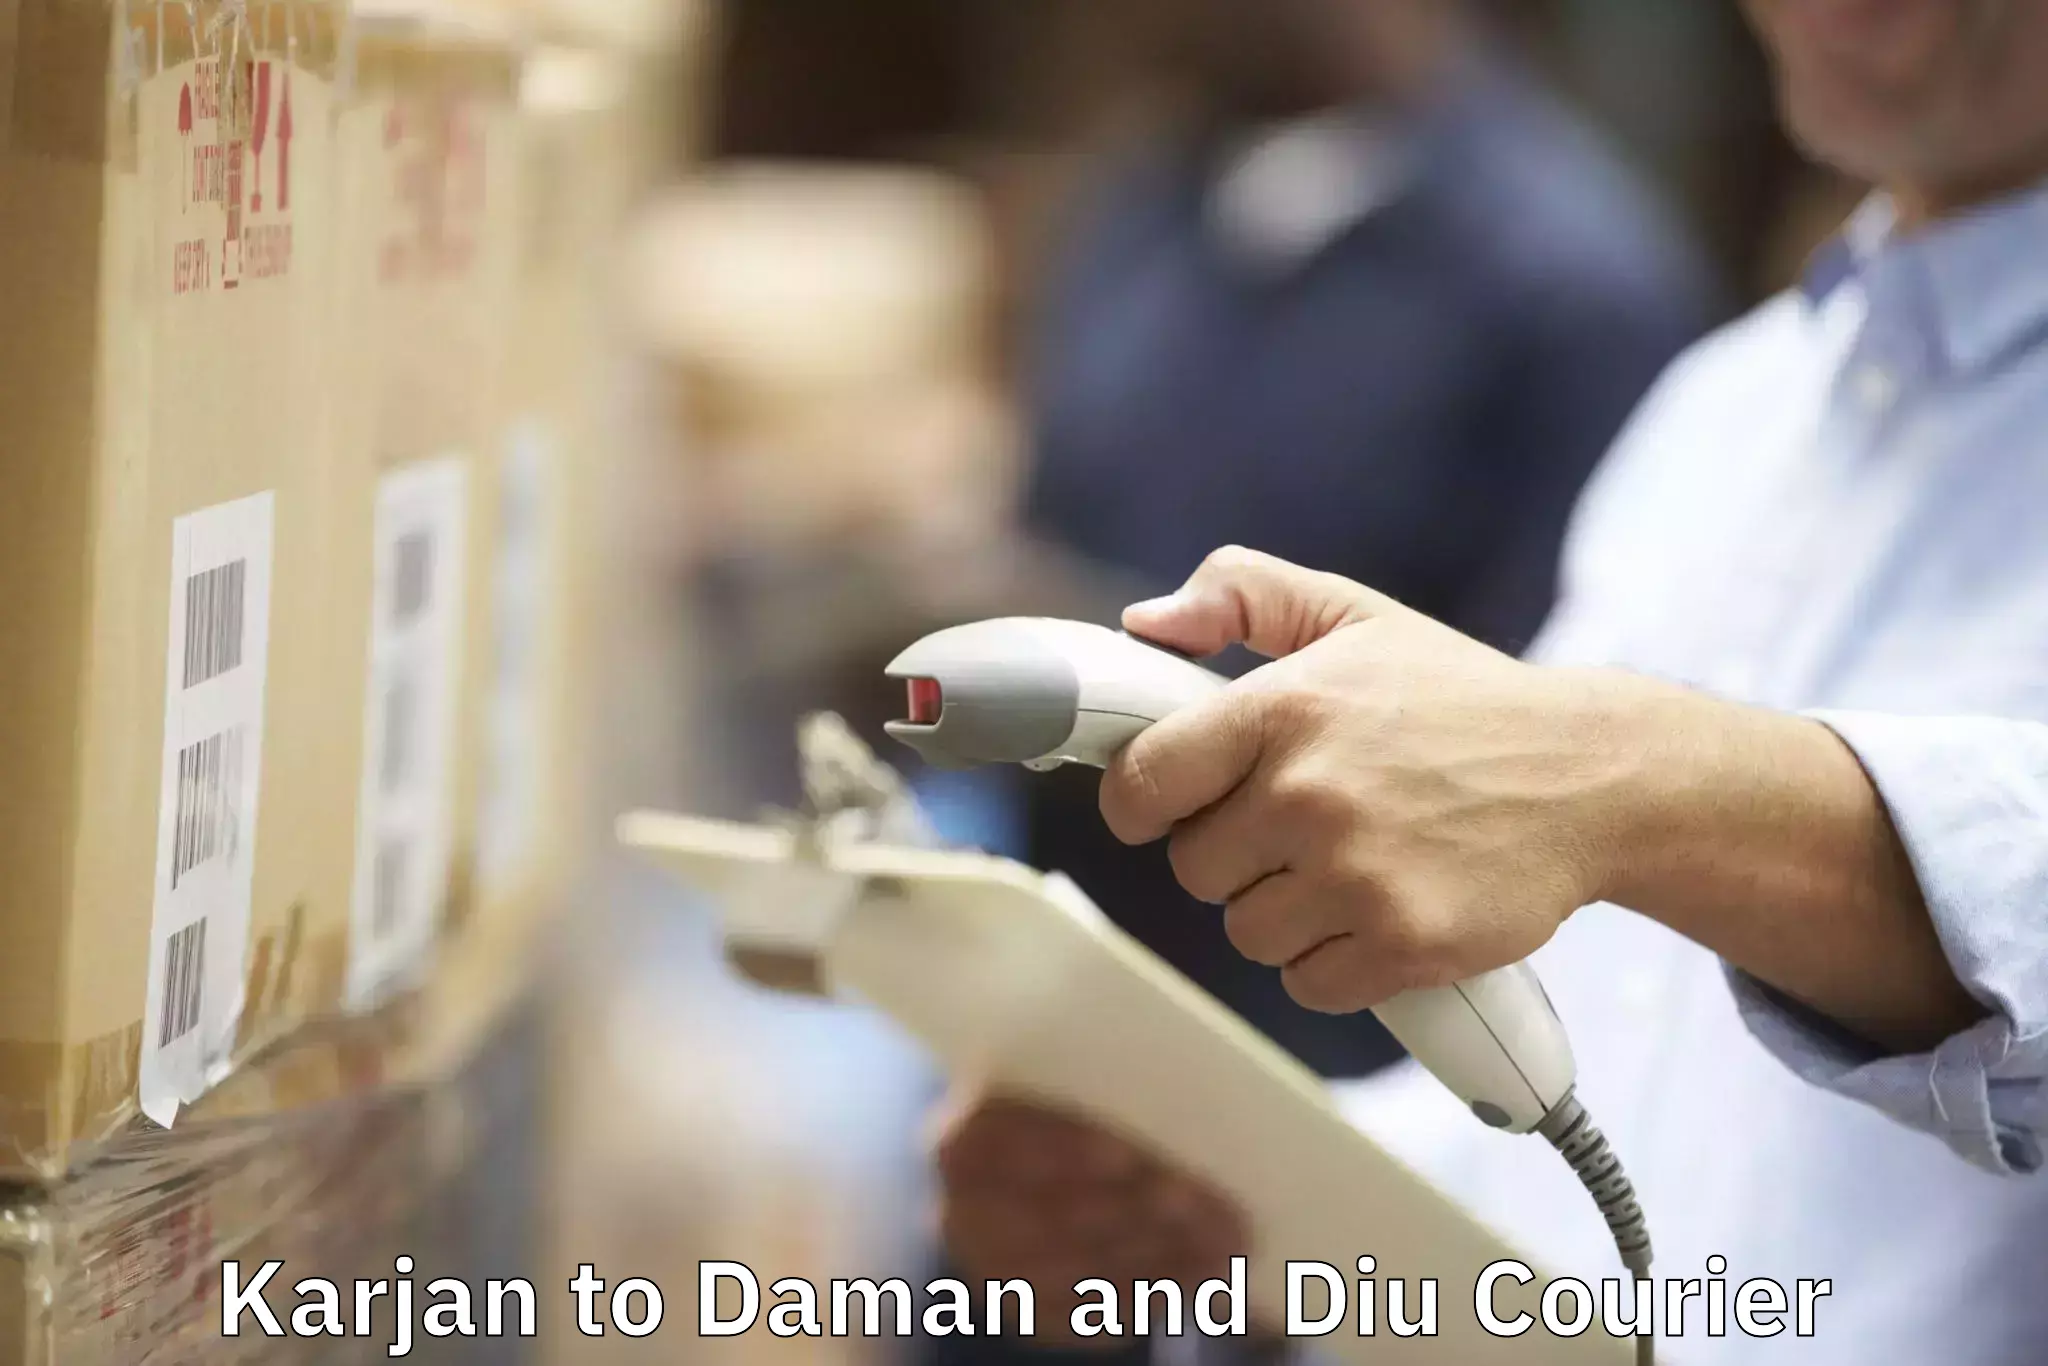 Household moving experts Karjan to Daman